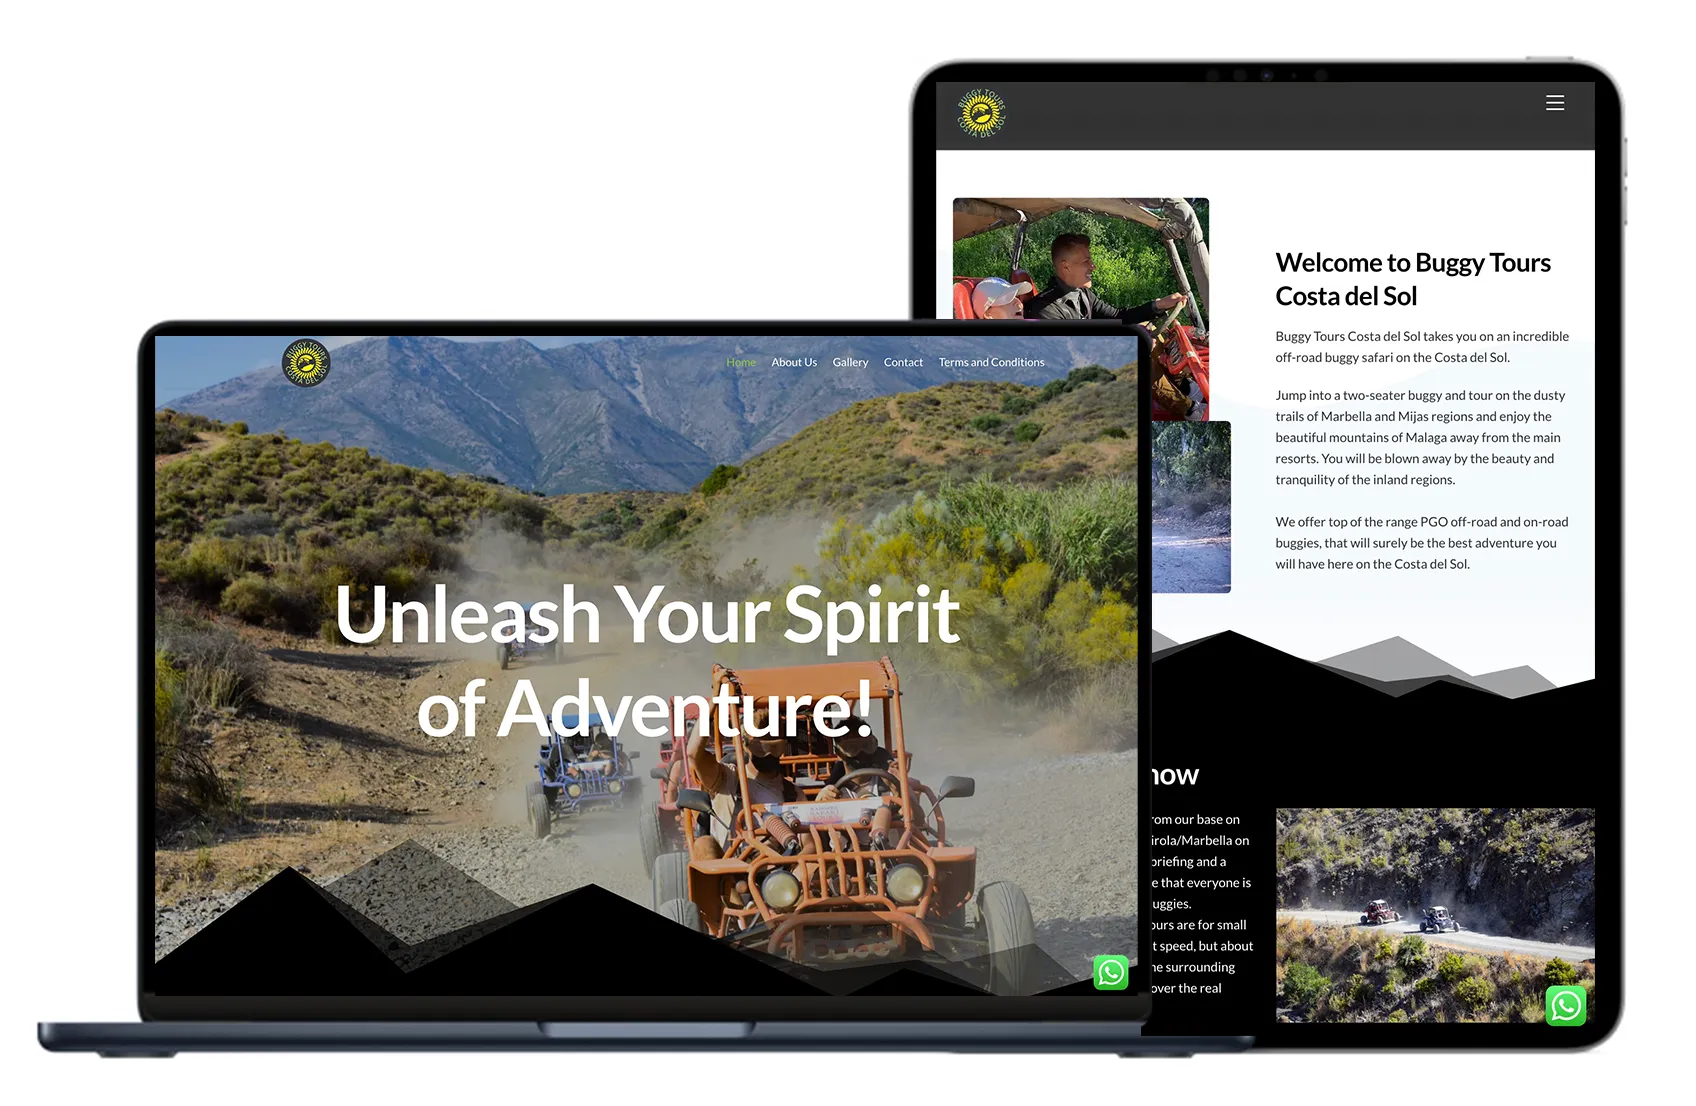 Die Website wird auf einem Mac-Laptop und einem iPad angezeigt. Der Laptop zeigt eine atemberaubende Aussicht auf die Berge.